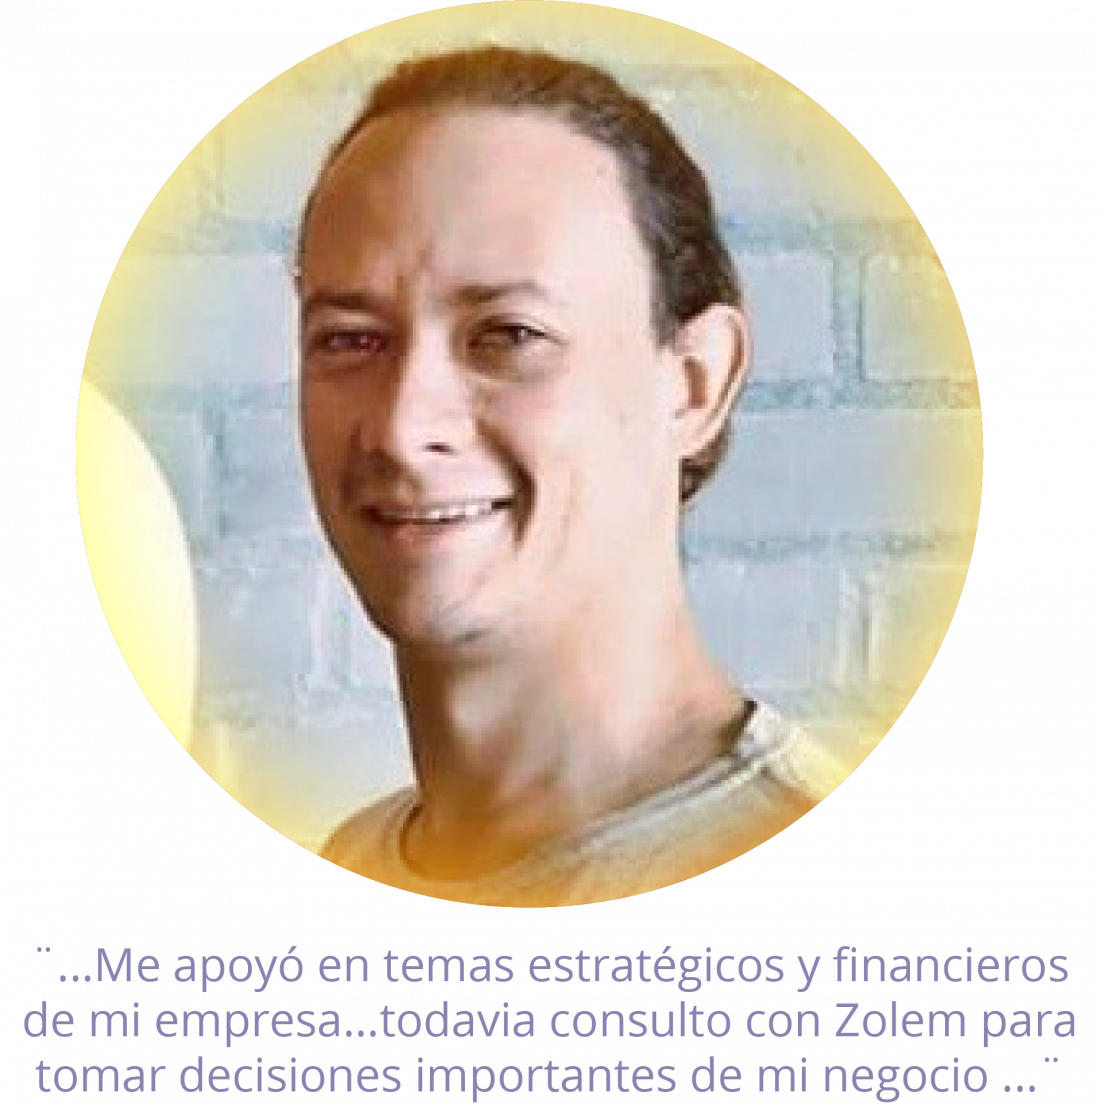 Testimonio Zolem Juan Pablo Toro: "Me apoyo en temas estratégicos y financieros de mi empresa... todavia consulto con Zolem para tomar desiciones importantes de mi negocio"